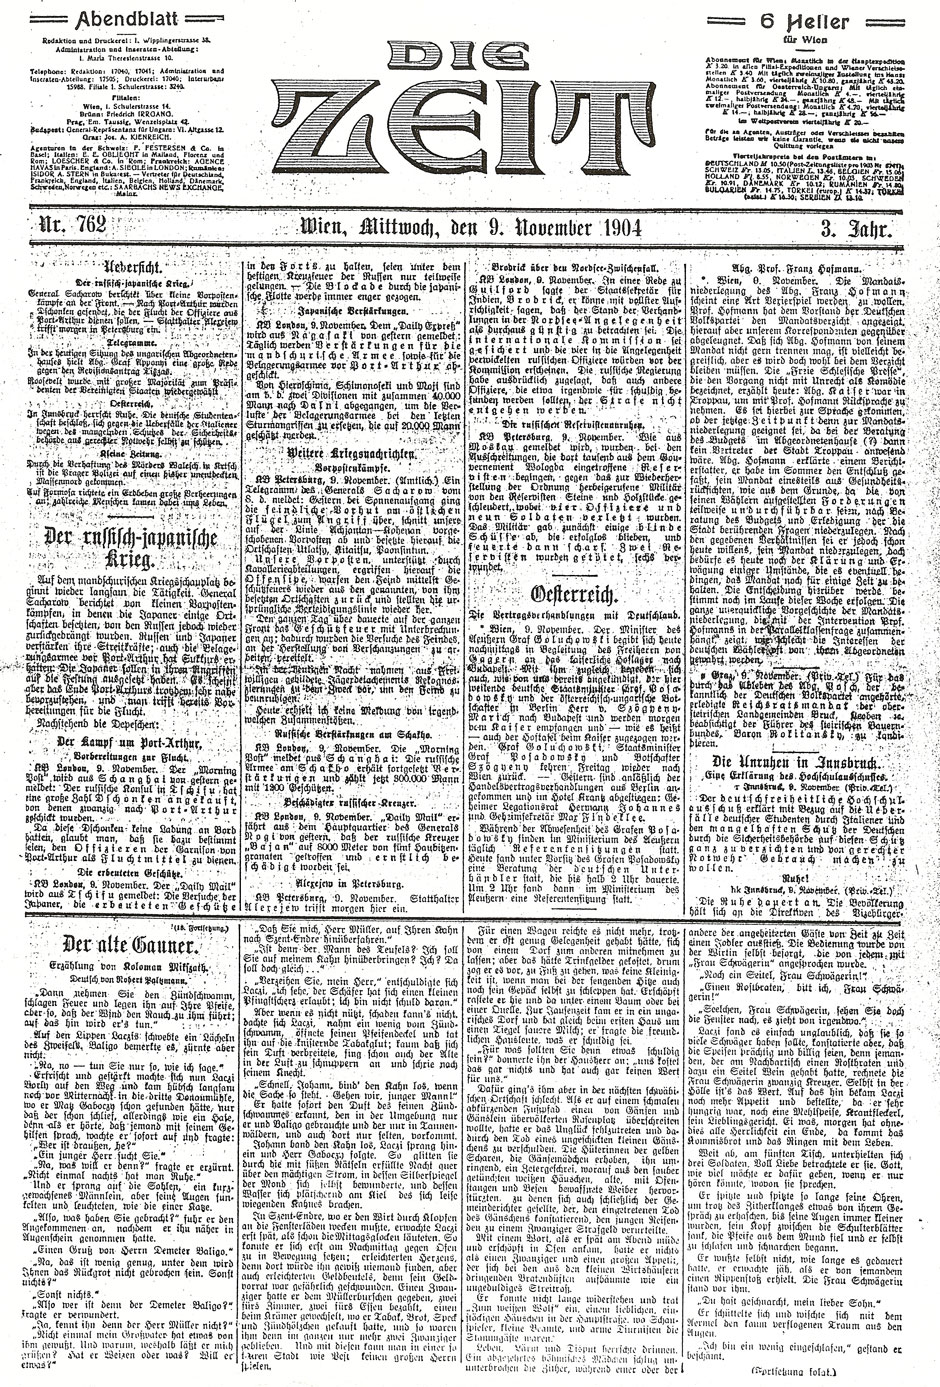 Die Zeit, 9.11.1904; Deckblatt